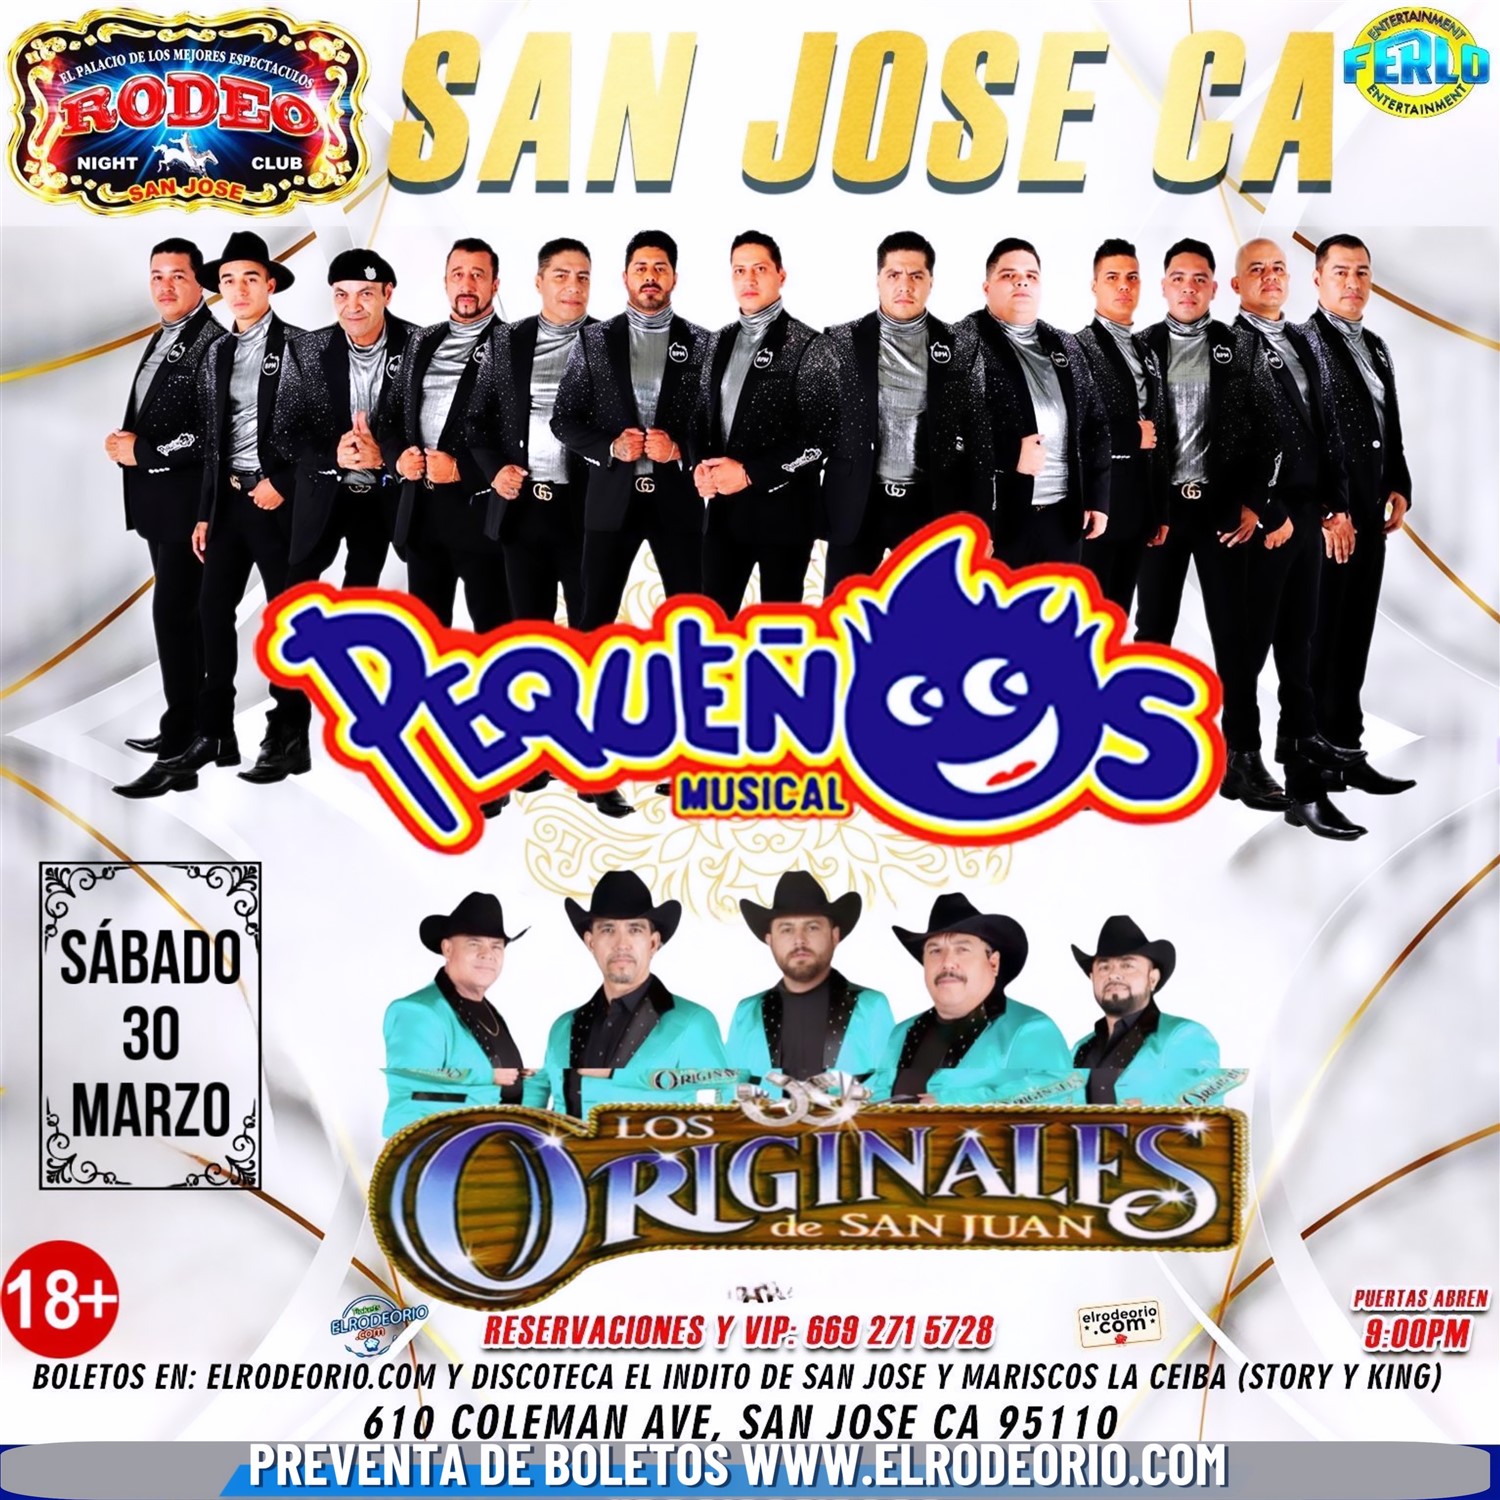 Banda Pequeños Musical y Los Originales de San Juan  on Mar 30, 21:00@Club Rodeo - Buy tickets and Get information on elrodeorio.com sanjoseentertainment